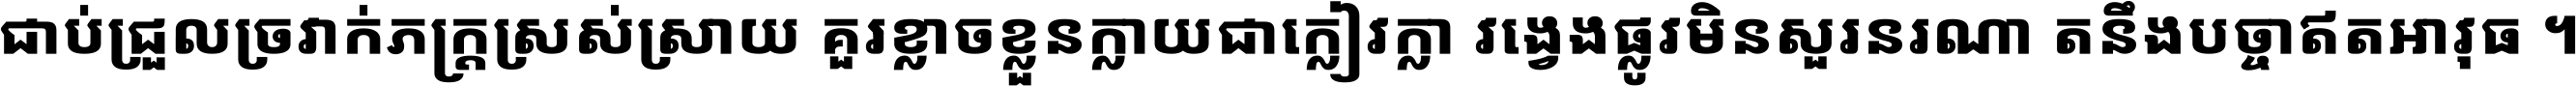 Noto Sans Khmer UI ExtraBold